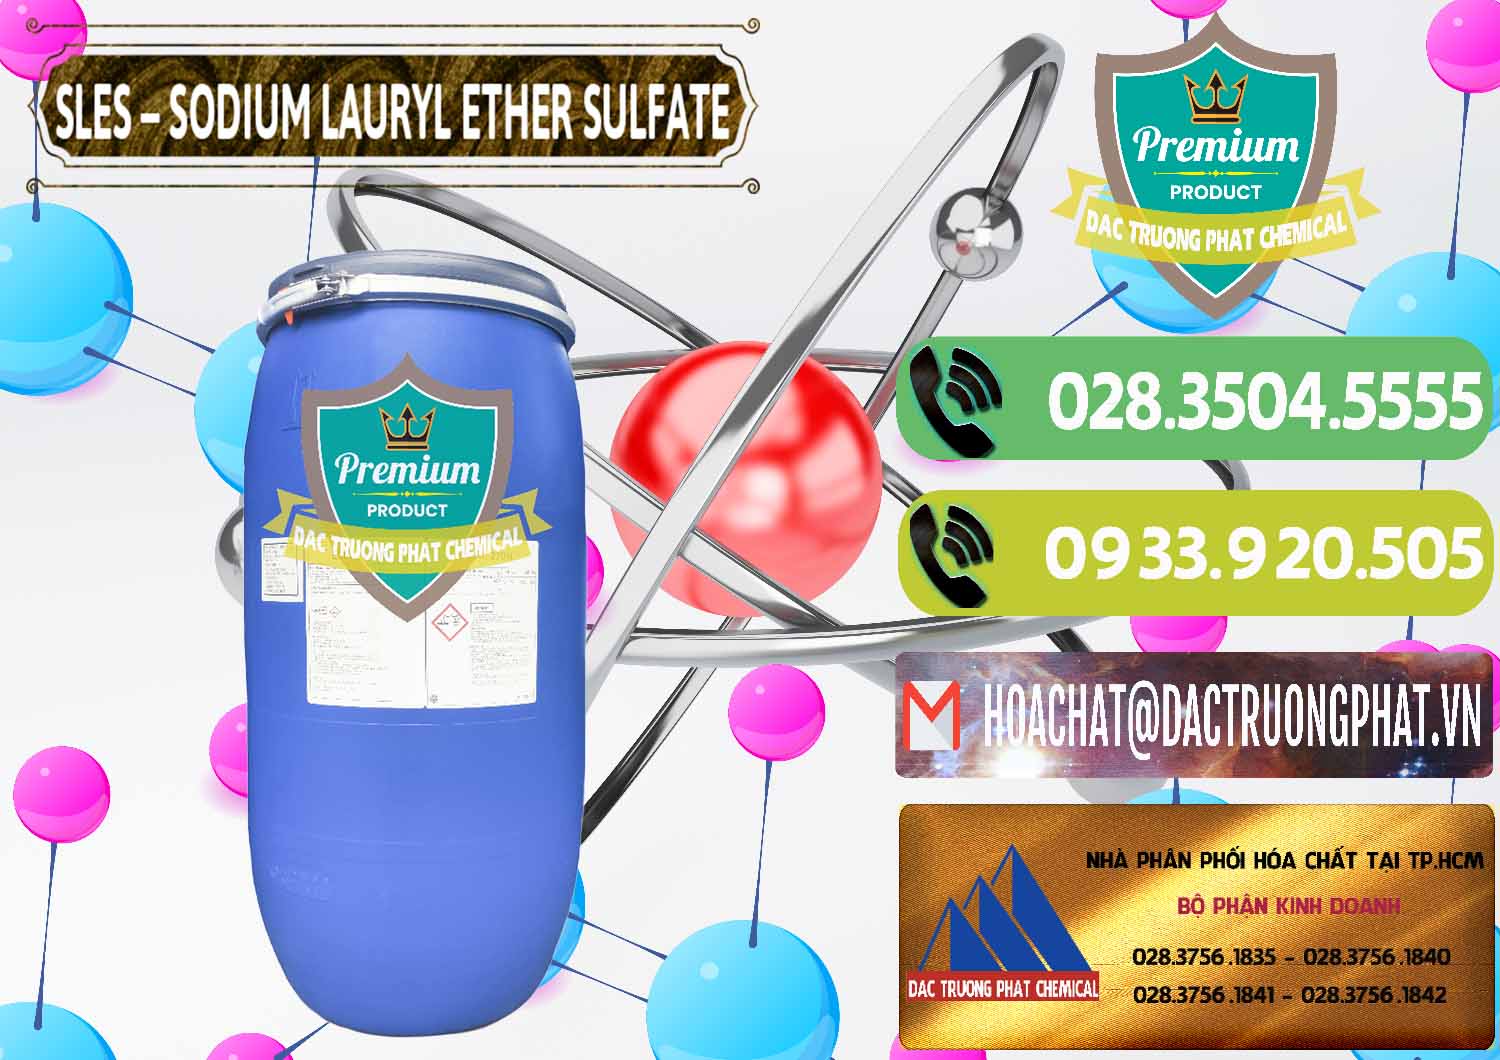 Công ty kinh doanh & bán Chất Tạo Bọt Sles - Sodium Lauryl Ether Sulphate Kao Indonesia - 0046 - Cty phân phối - bán hóa chất tại TP.HCM - hoachatmientay.vn